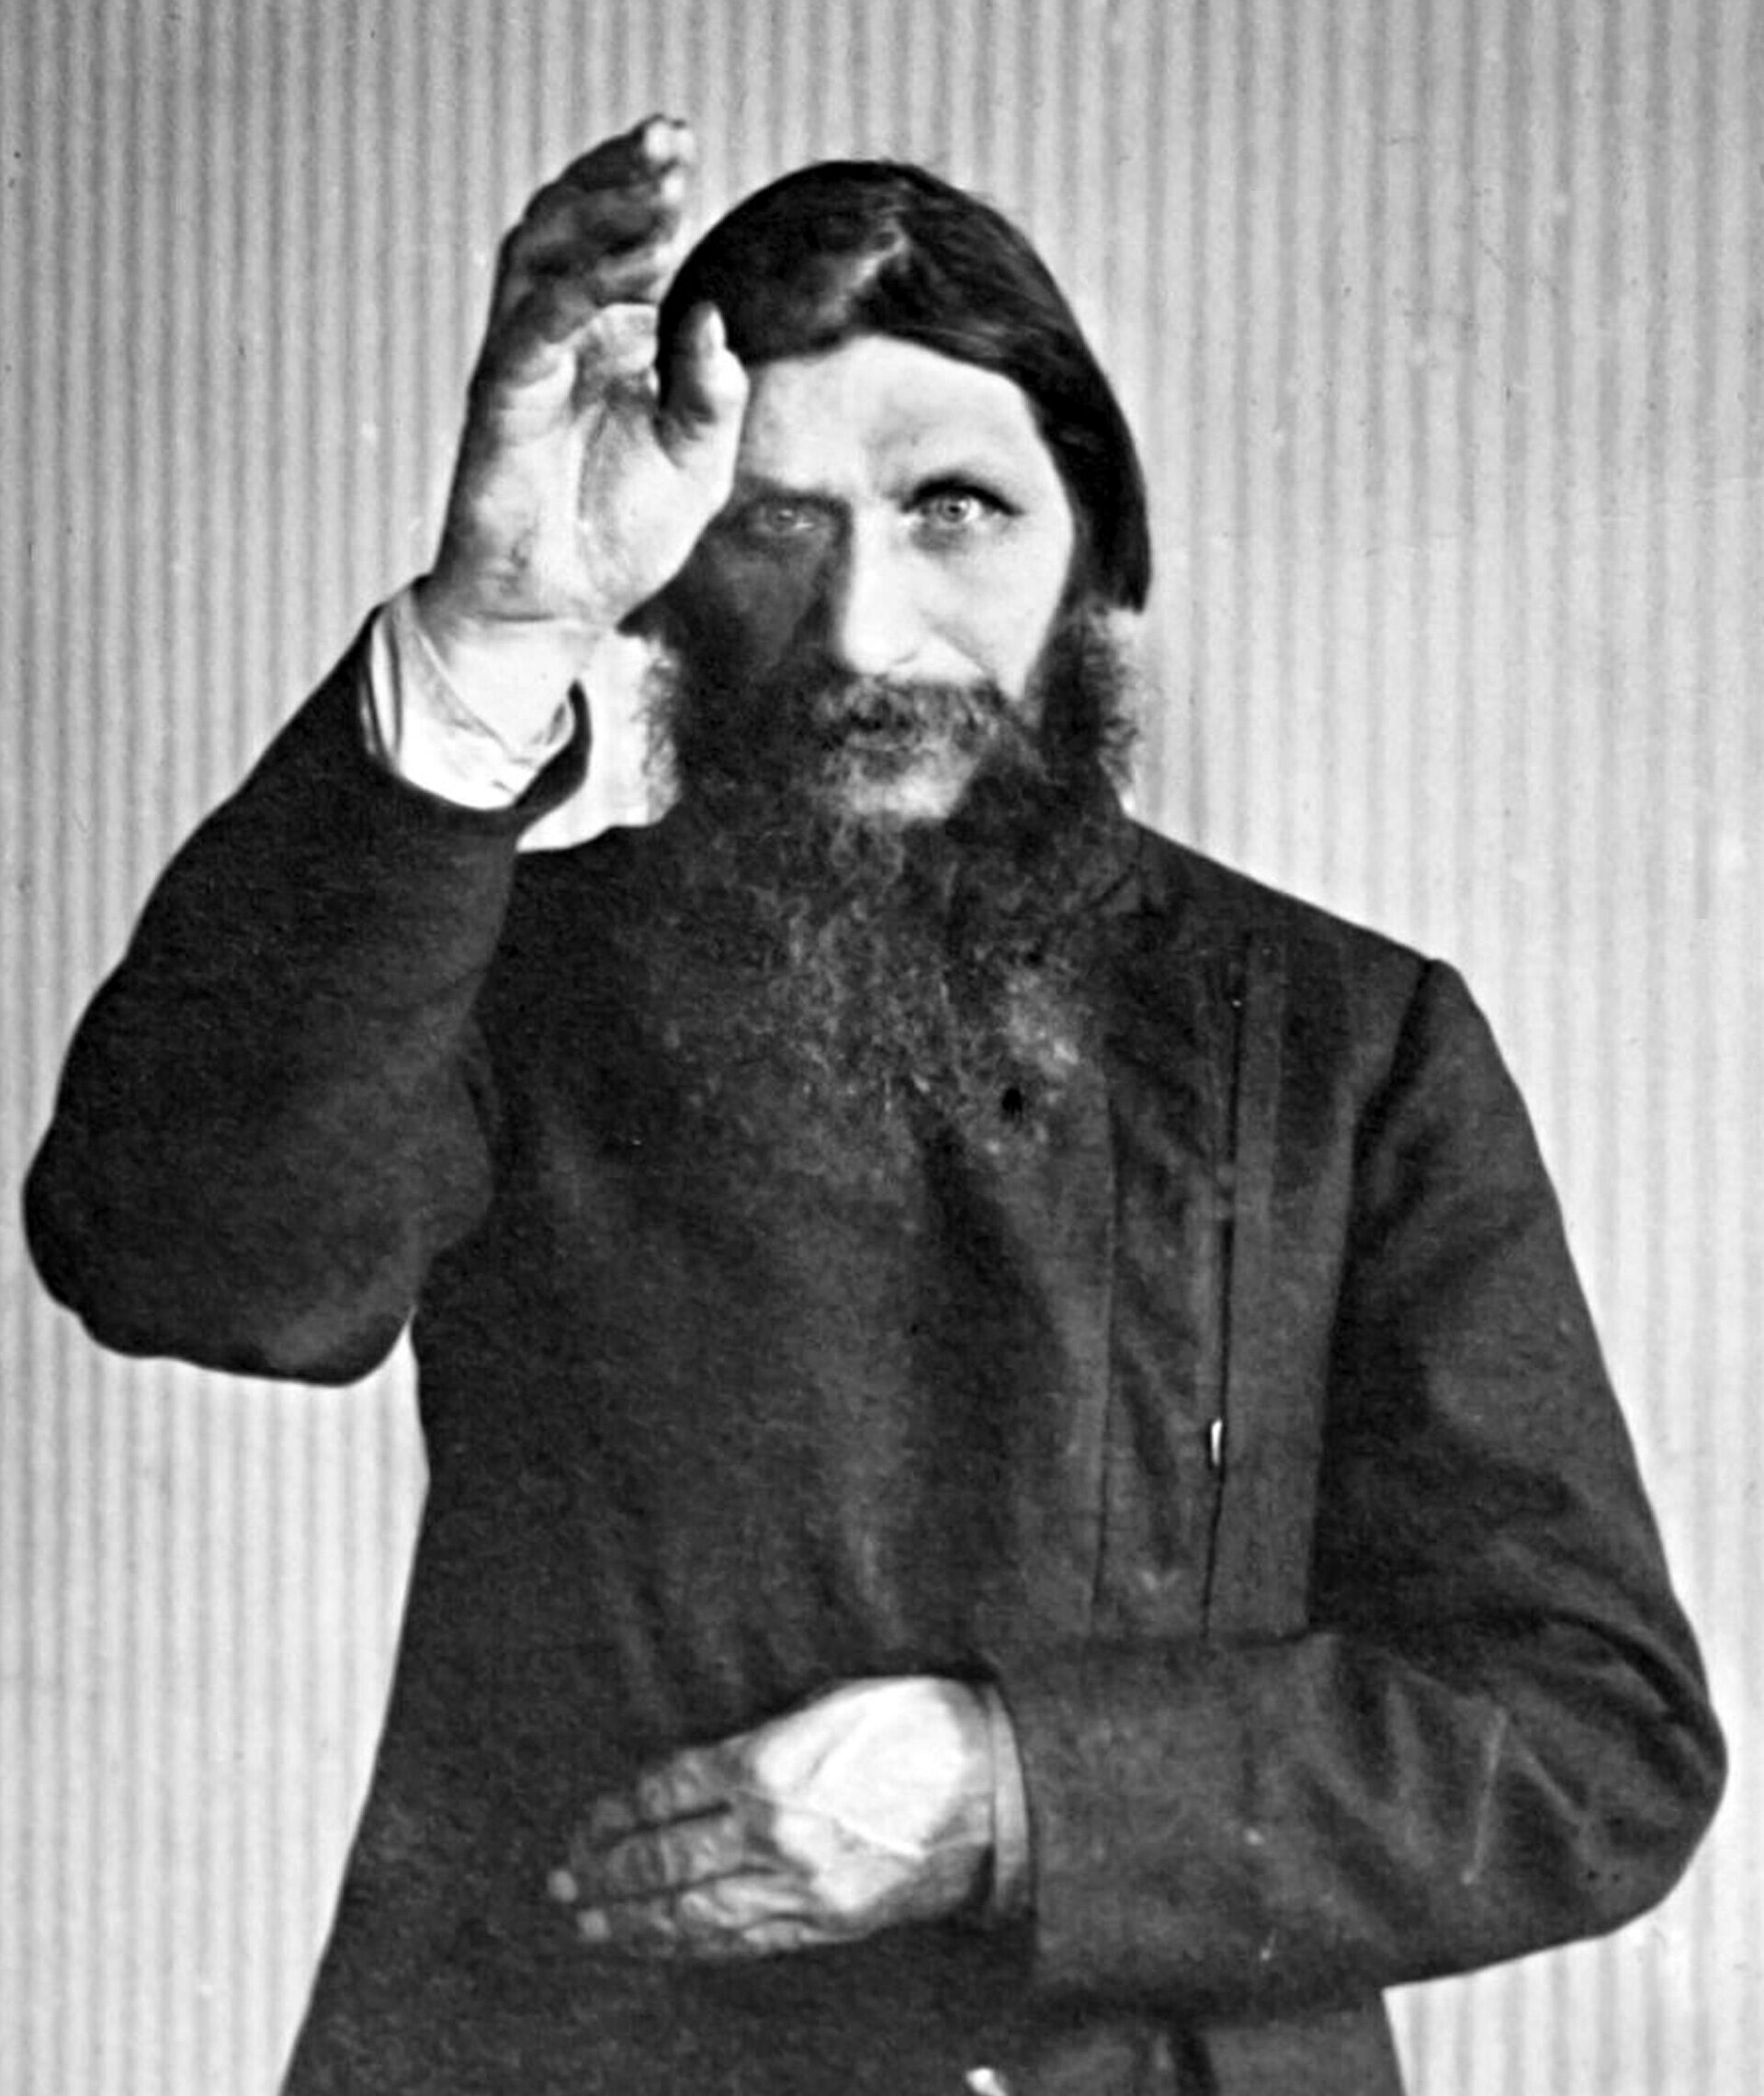 Rasputin fazendo uma benção.
